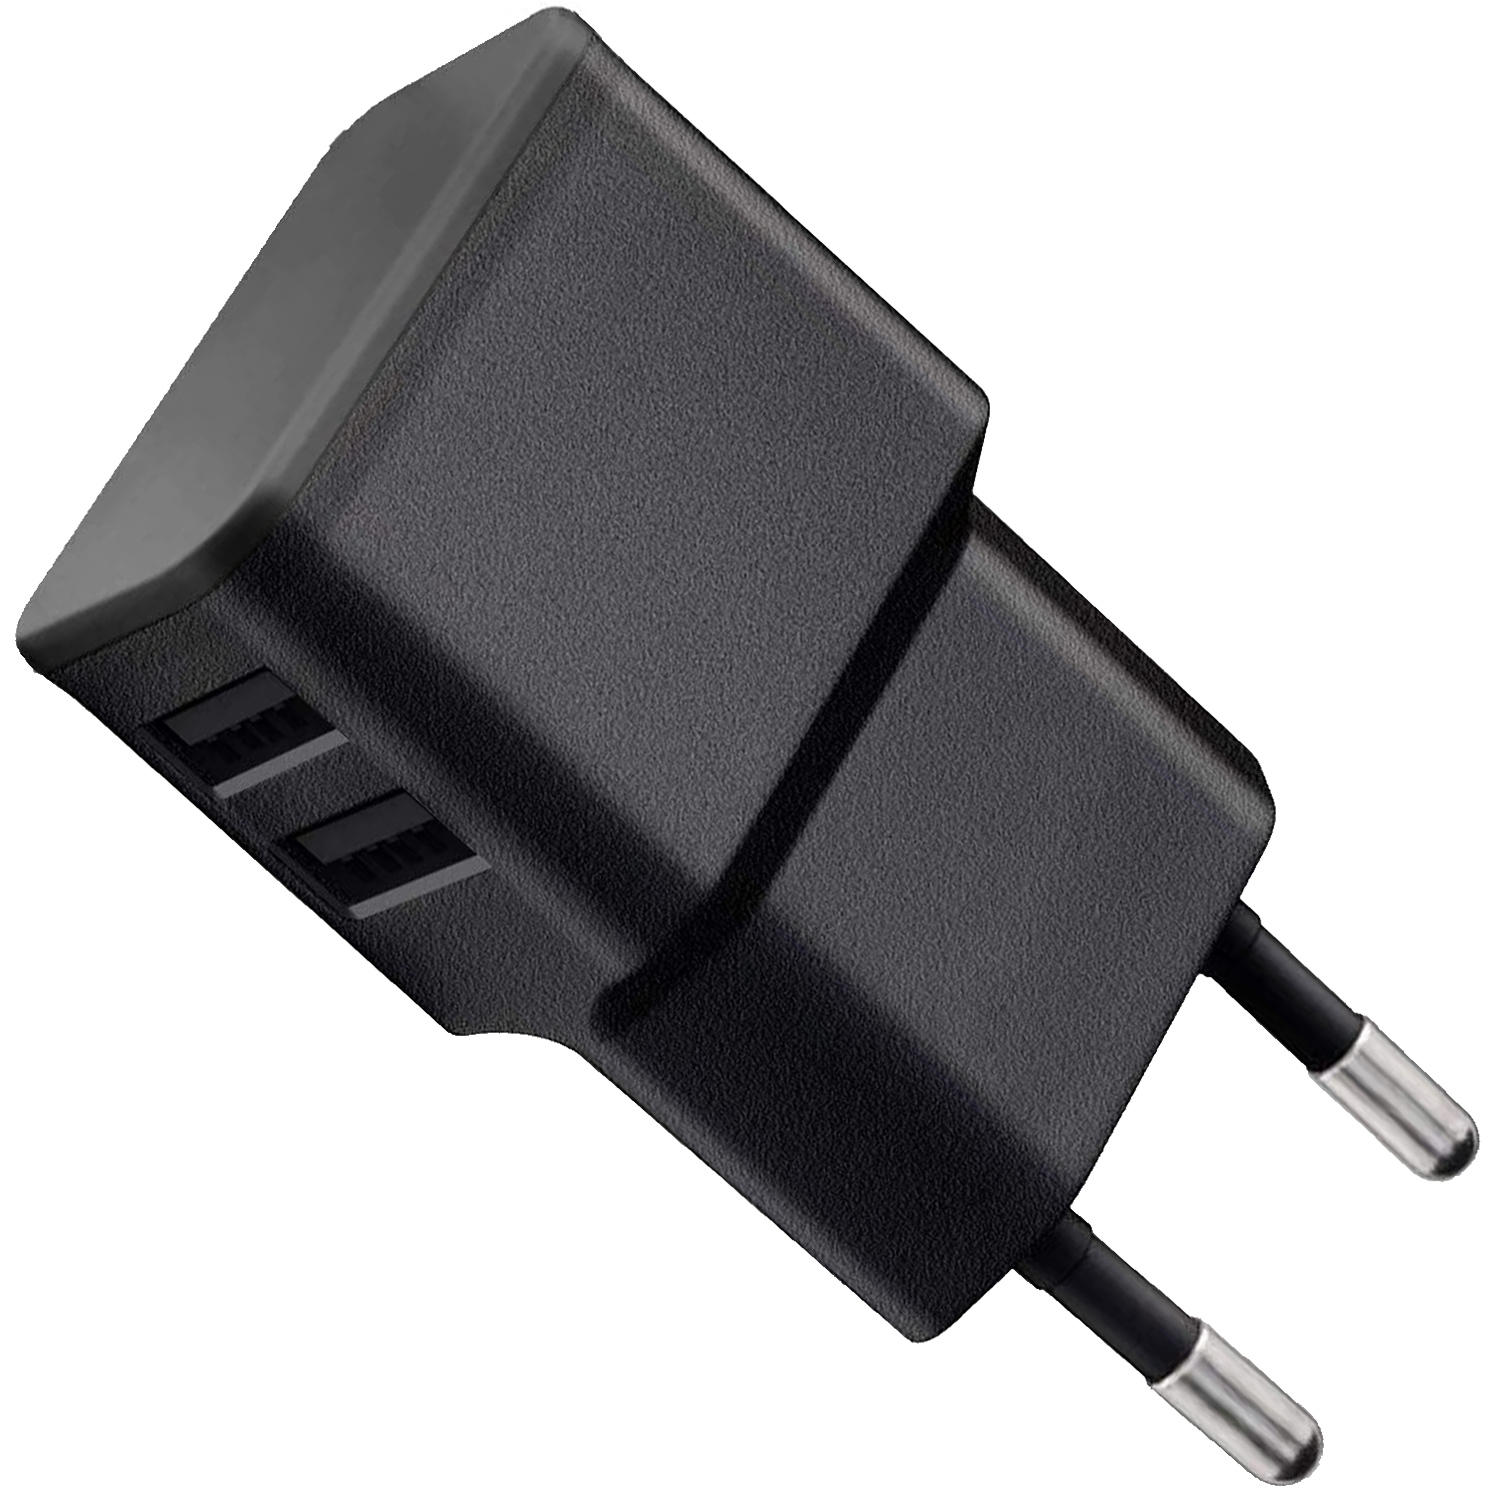 für USB Roam, Ladegerät USB-C schwarz Kabel WICKED Netzteil CHILI USB auf für USB-A 10W Dual Sonos (2.4A,12W) Dual Netzteil ersetzt